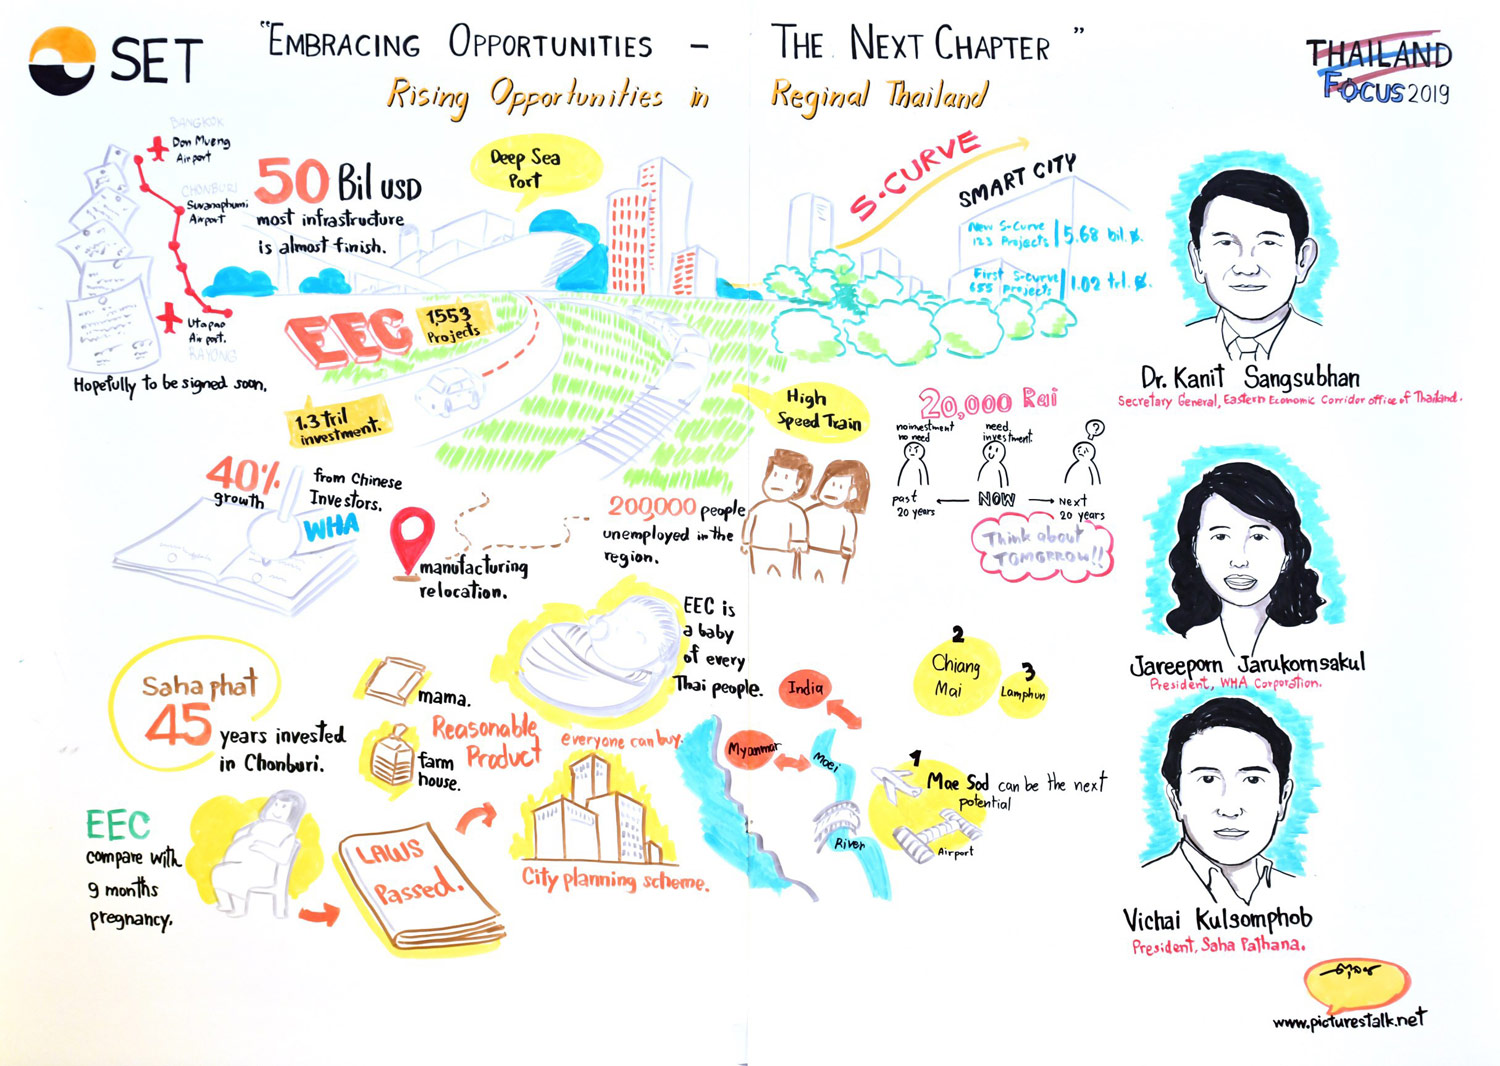 Thailand Focus 2019 - Rising Opportunities in Regional Thailand - Dr. Kanit Sangsubhan, Ms. Jareeporn Jarukornsakul, Mr. Vichai Kulsomphob